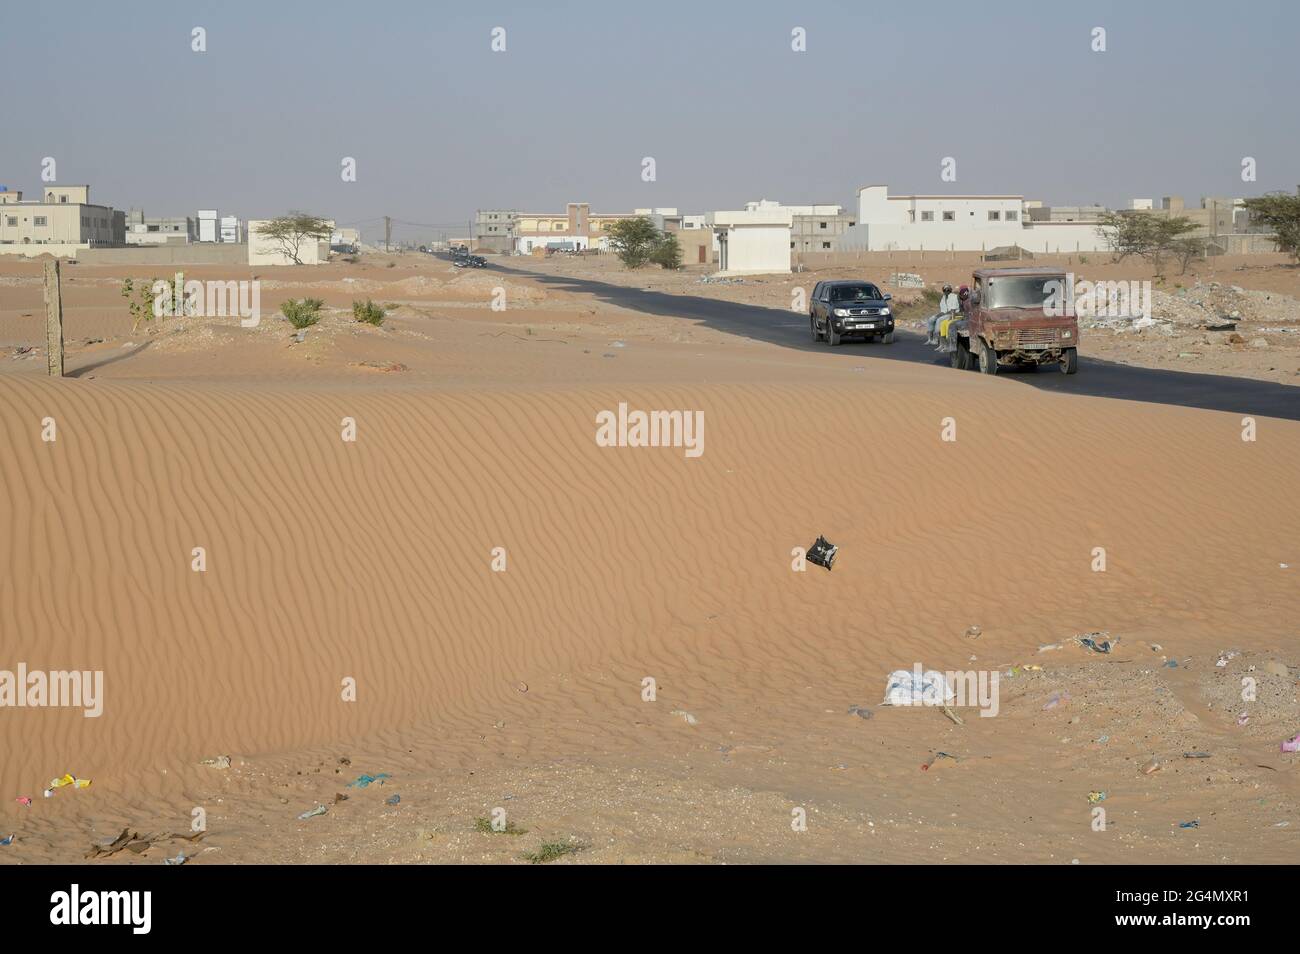 MAURITANIA, Nouakchott, desert at city outskirts, city growth, new buildings / MAURETANIEN, Nuakschott, Wüste am Stadtrand, Städtewachstum, Urbanisierung Stock Photo